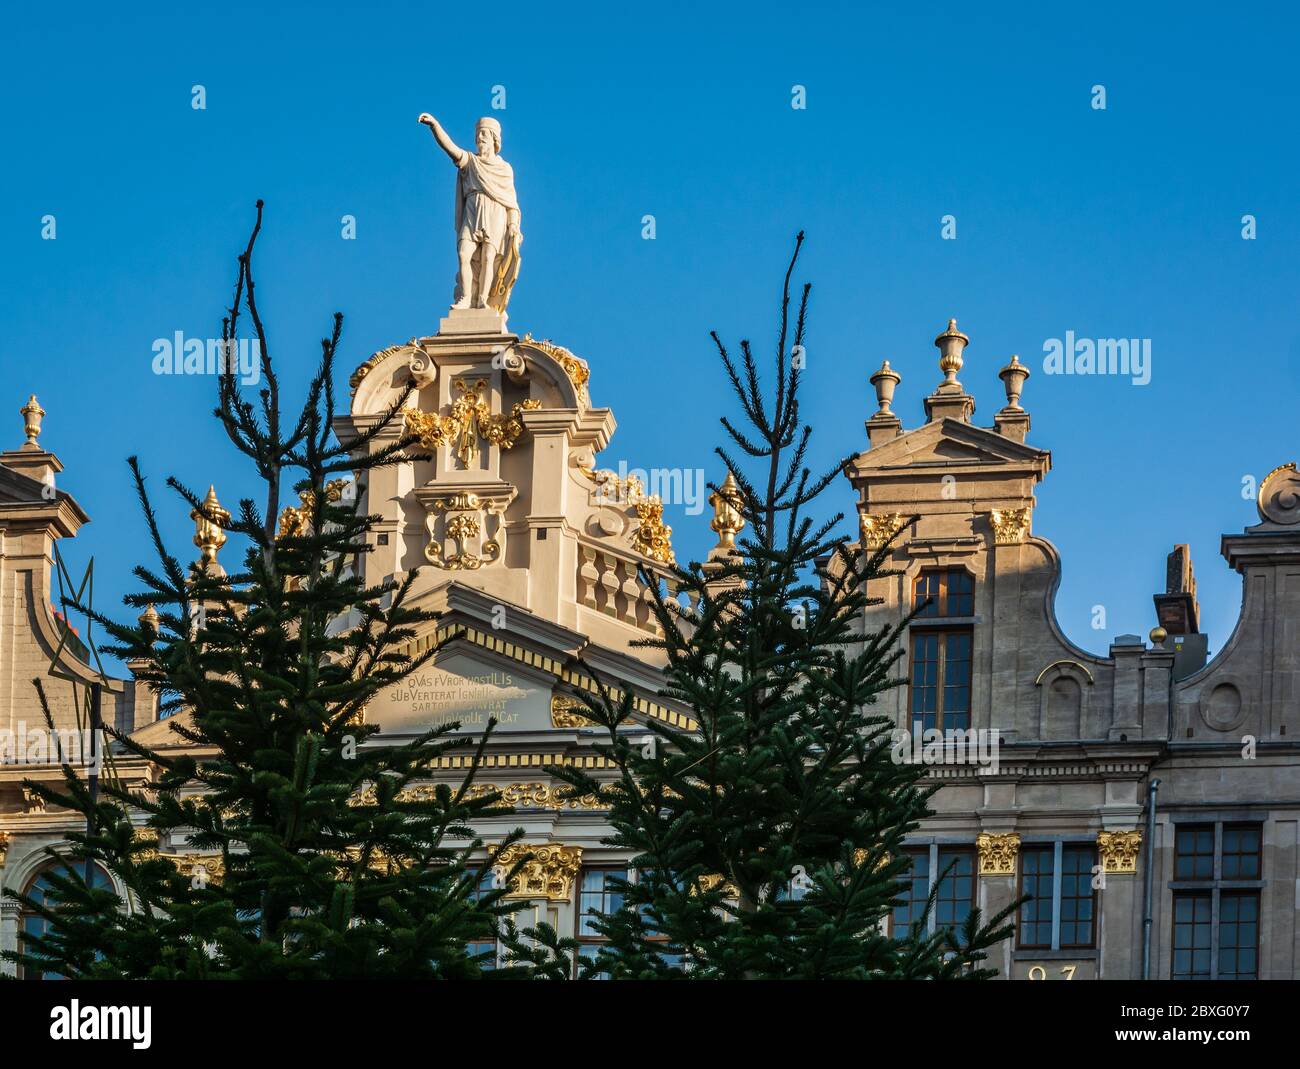 Una estatua en la parte superior de uno de los edificios de la Grand Place (la Grand-Place), un lugar declarado Patrimonio de la Humanidad por la UNESCO en el centro de Bruselas, Bélgica, Foto de stock